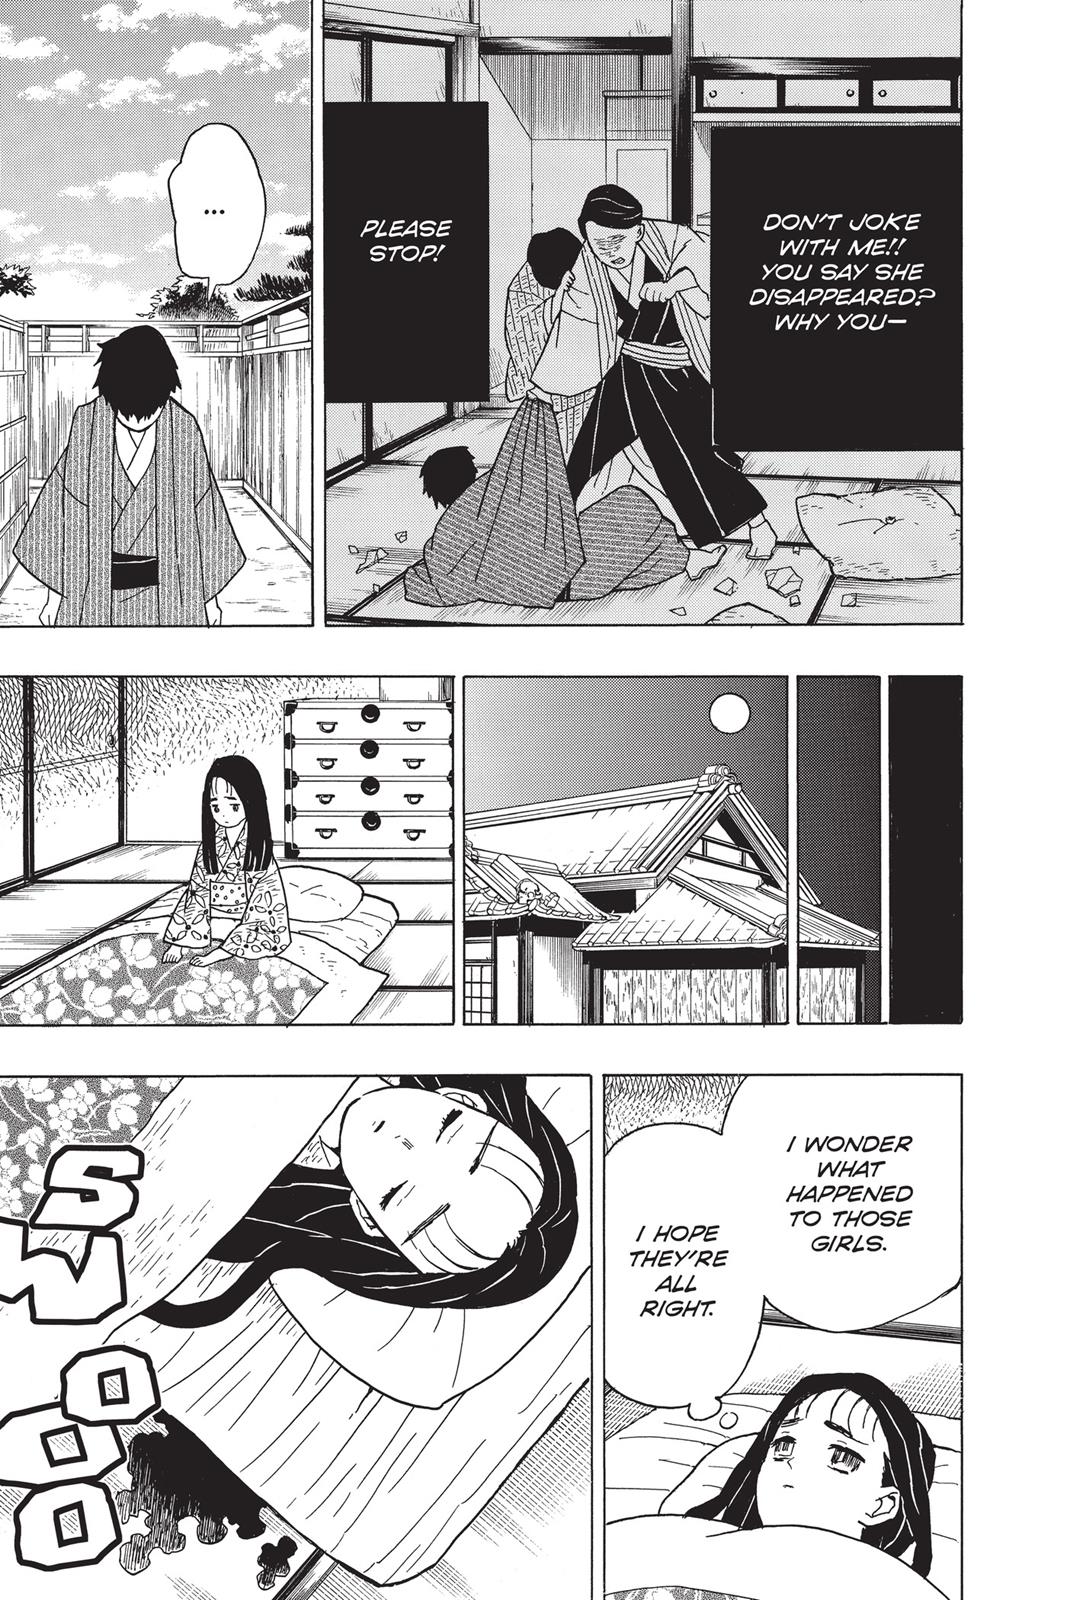 Demon Slayer Manga Manga Chapter - 10 - image 6